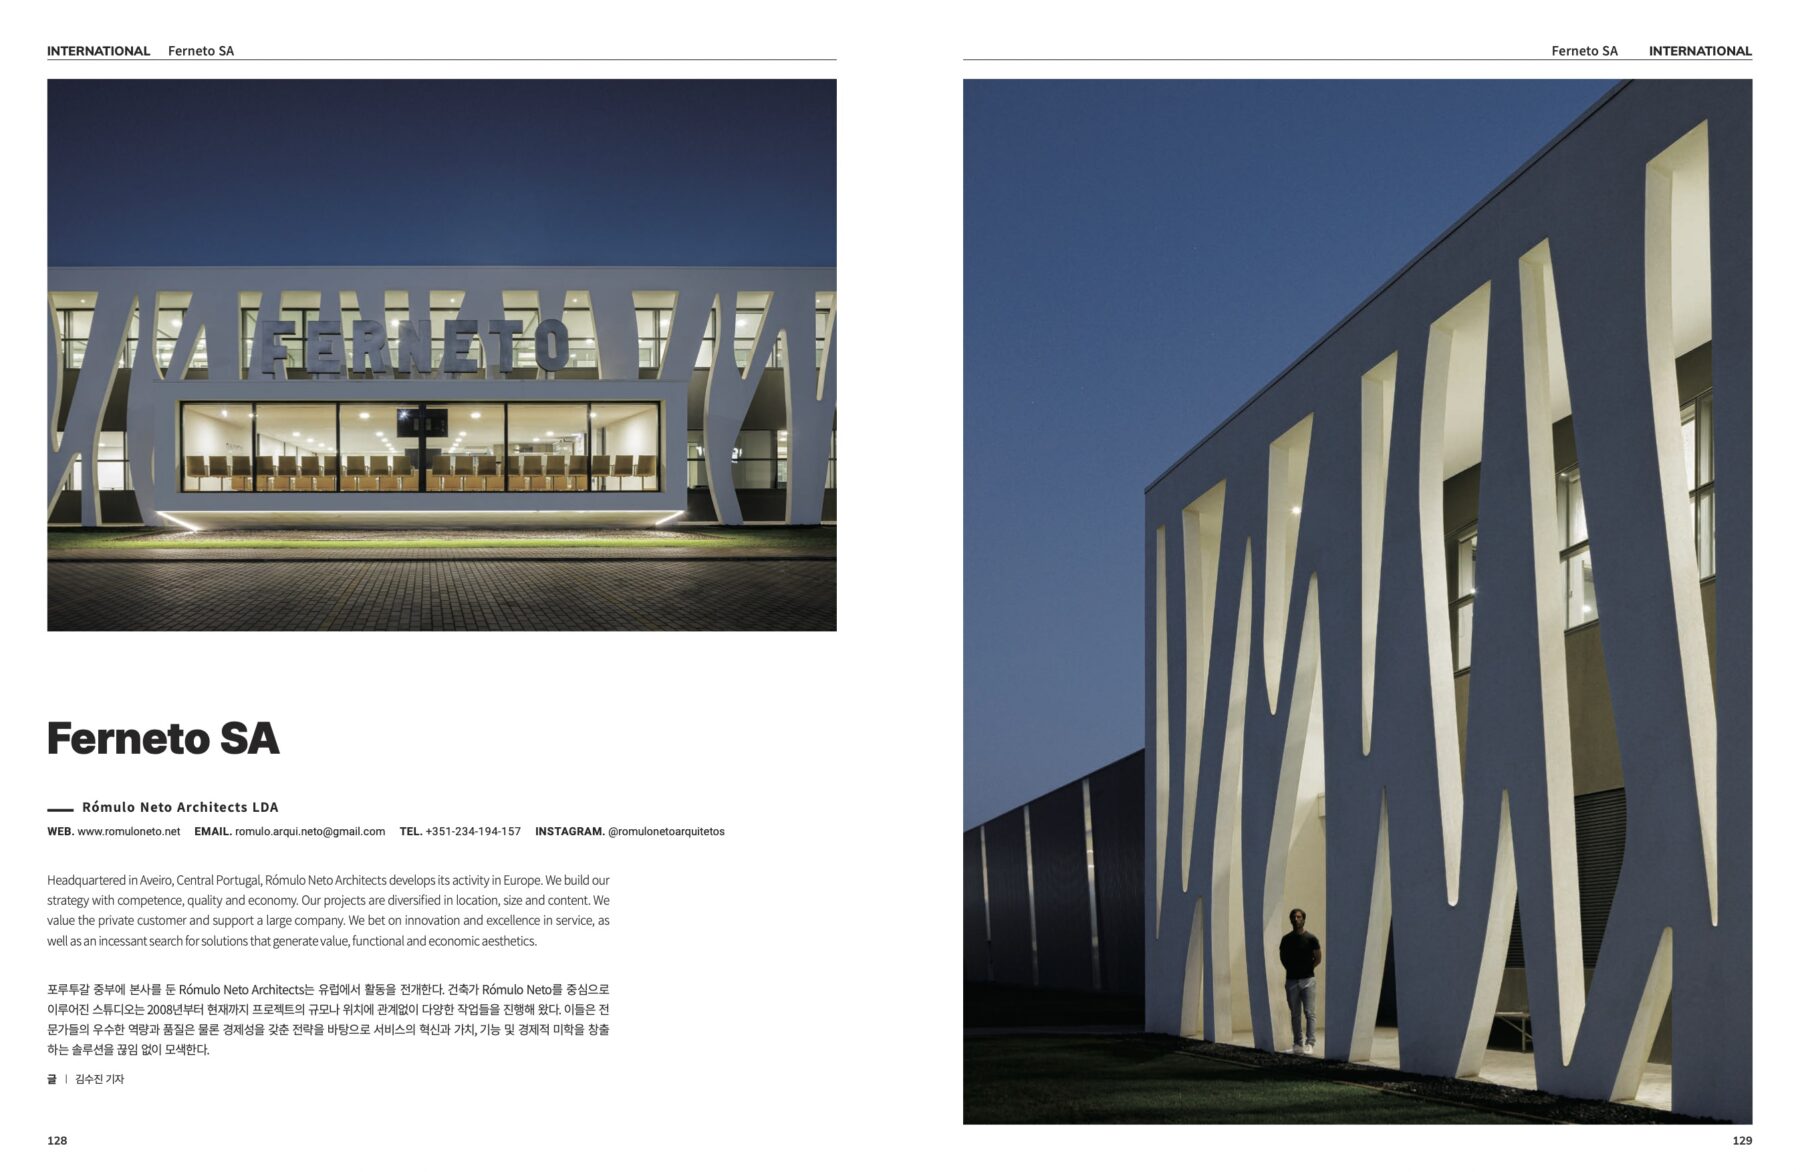 DecoJournal publica fabrica FERNETO do arquiteto Romulo Neto